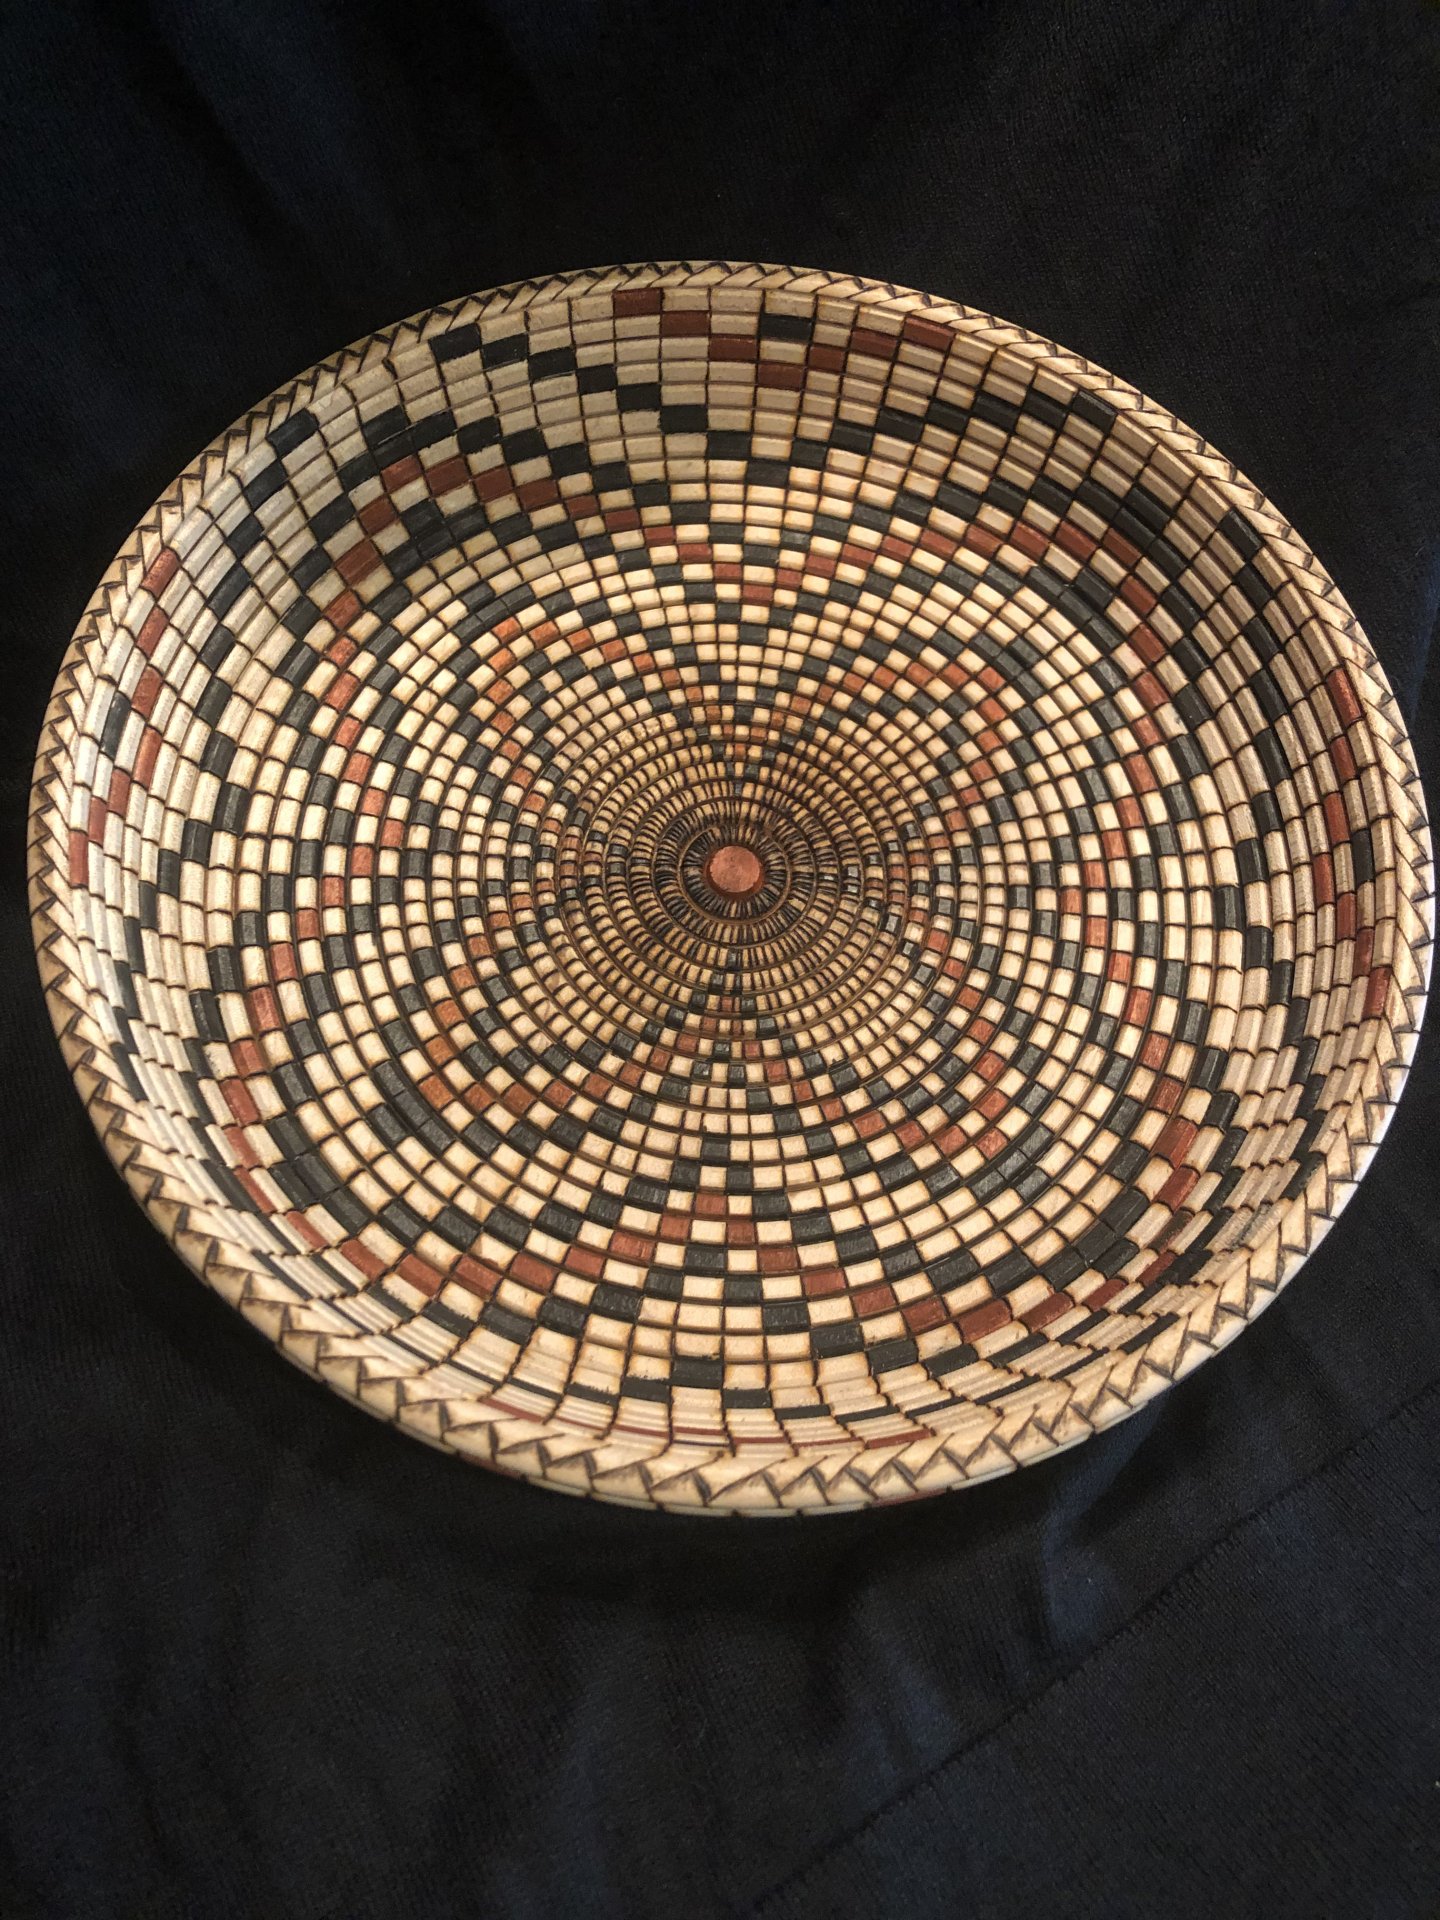 Pueblo basket illusion